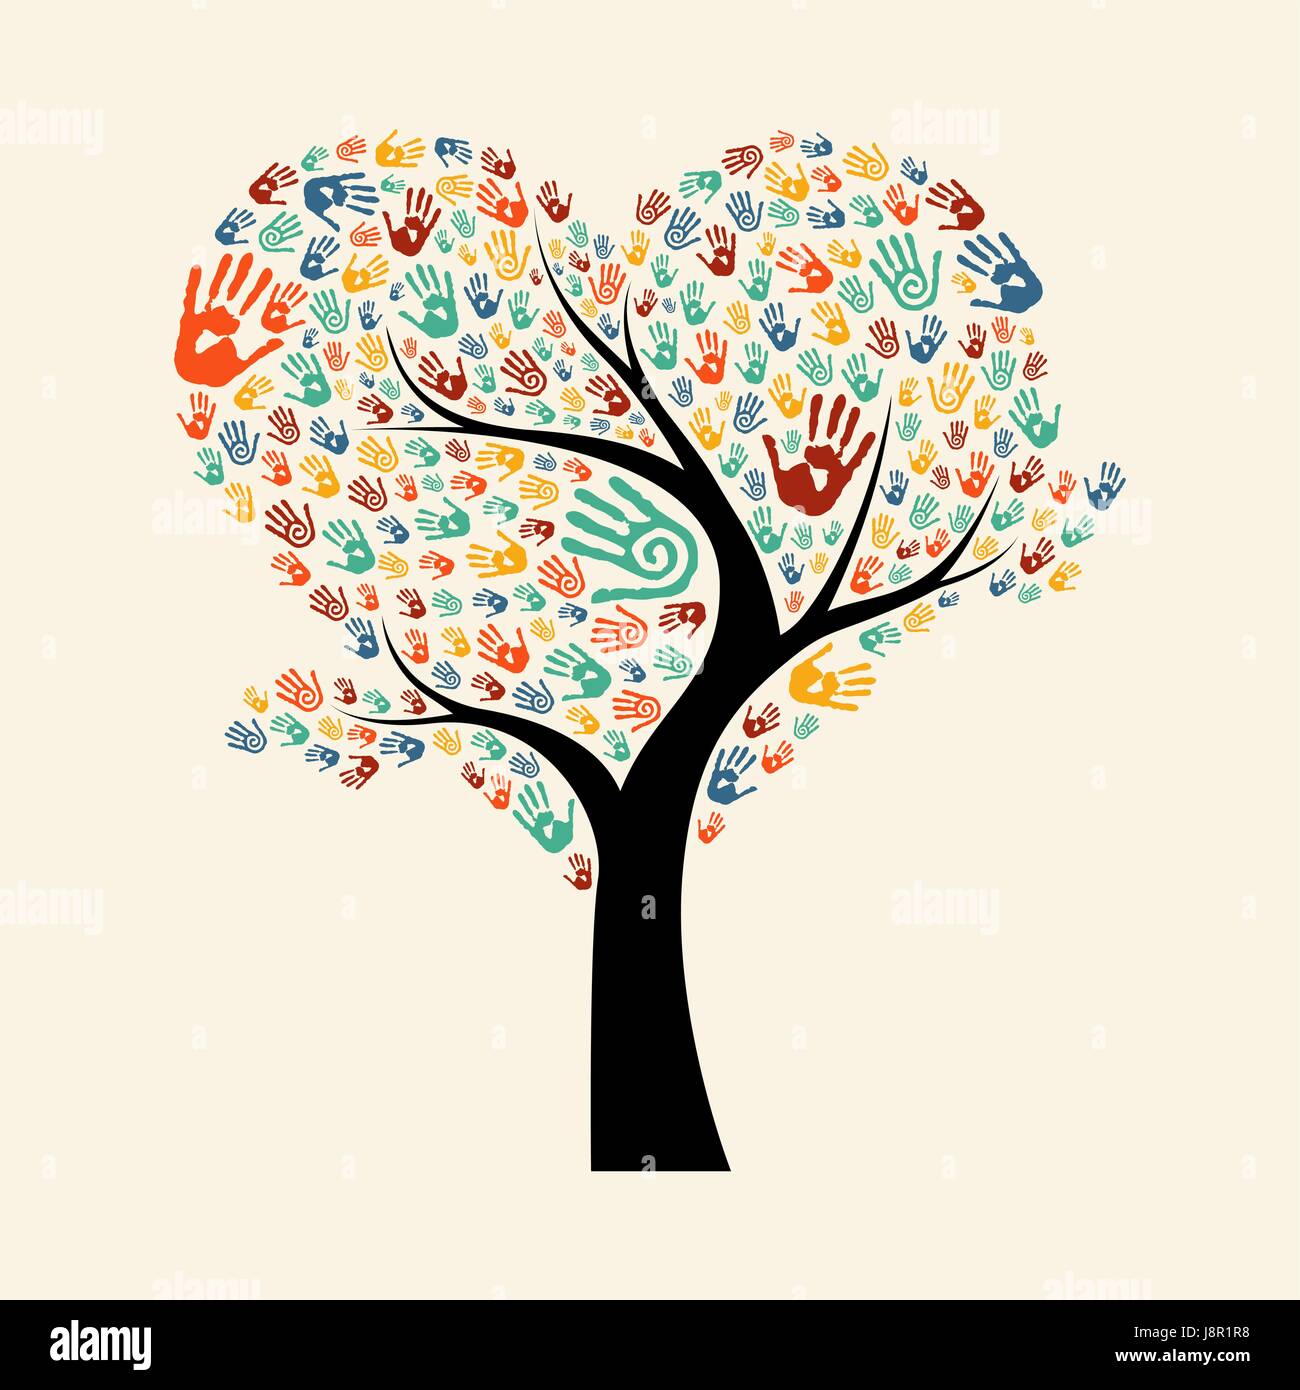 Baum aus unterschiedlichen Farbe Hand druckt in Herzform. Gemeinschaft Hilfe Konzept Abbildung. EPS10 Vektor. Stock Vektor